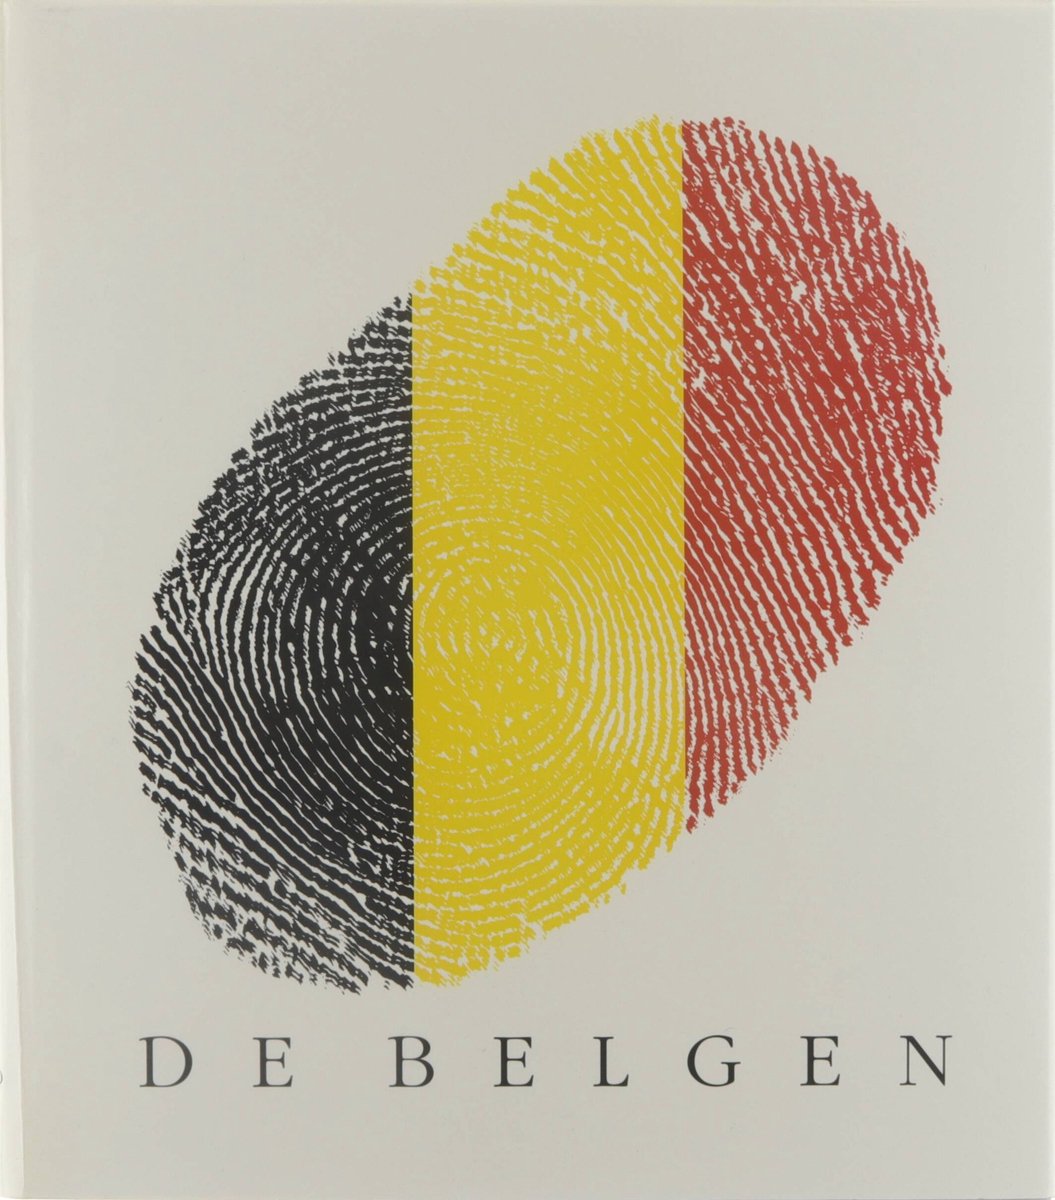 De Belgen